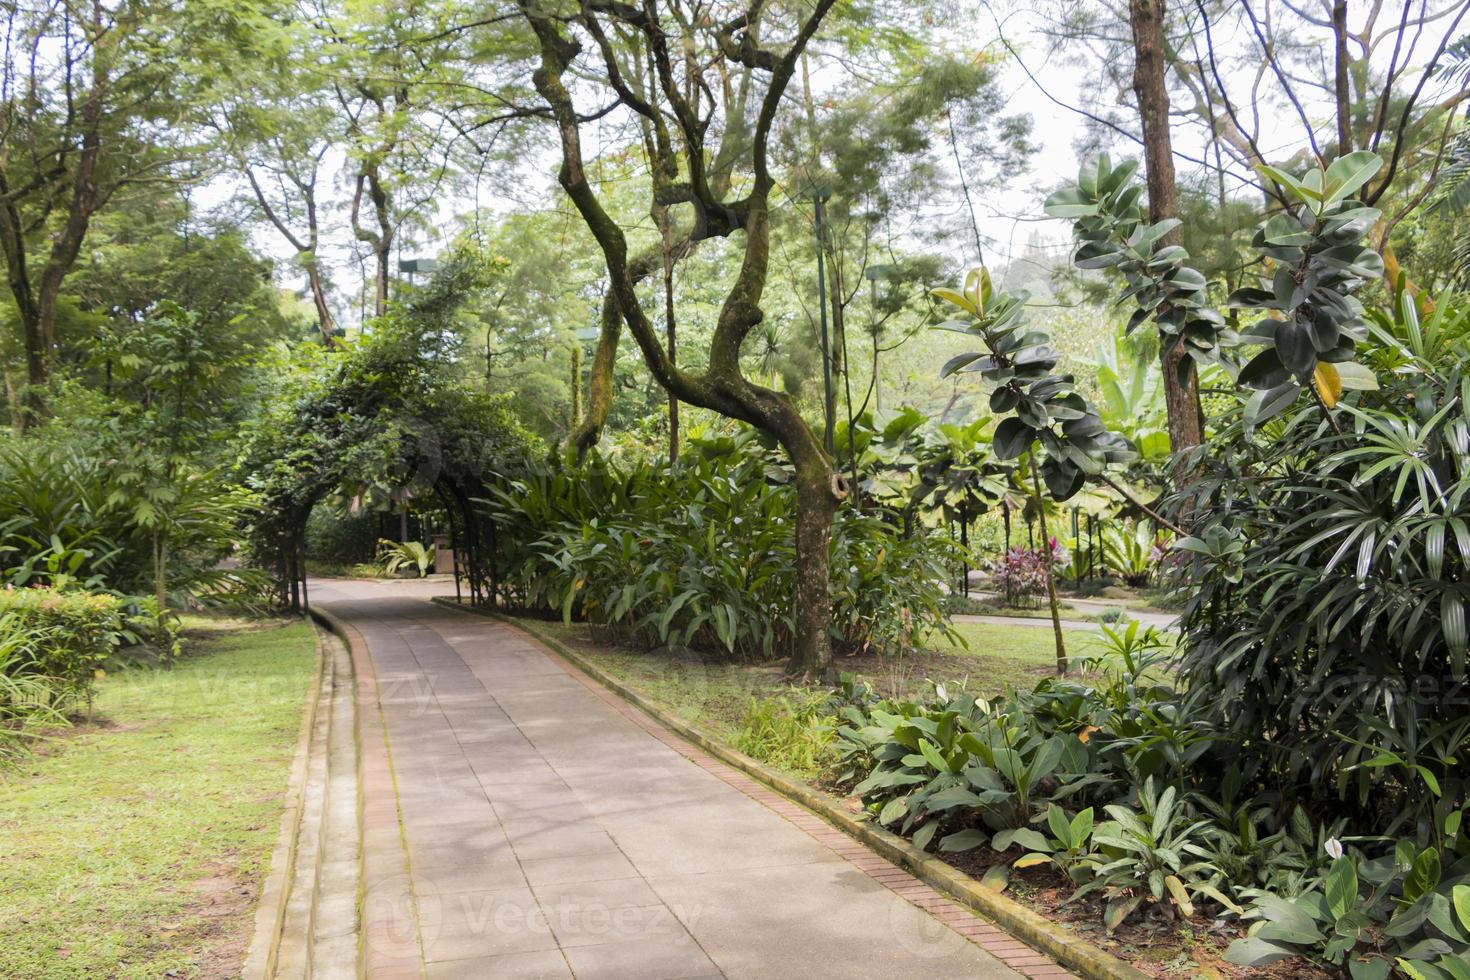 jardins botânicos perfeitos e limpos do park perdana em kuala lumpur. foto